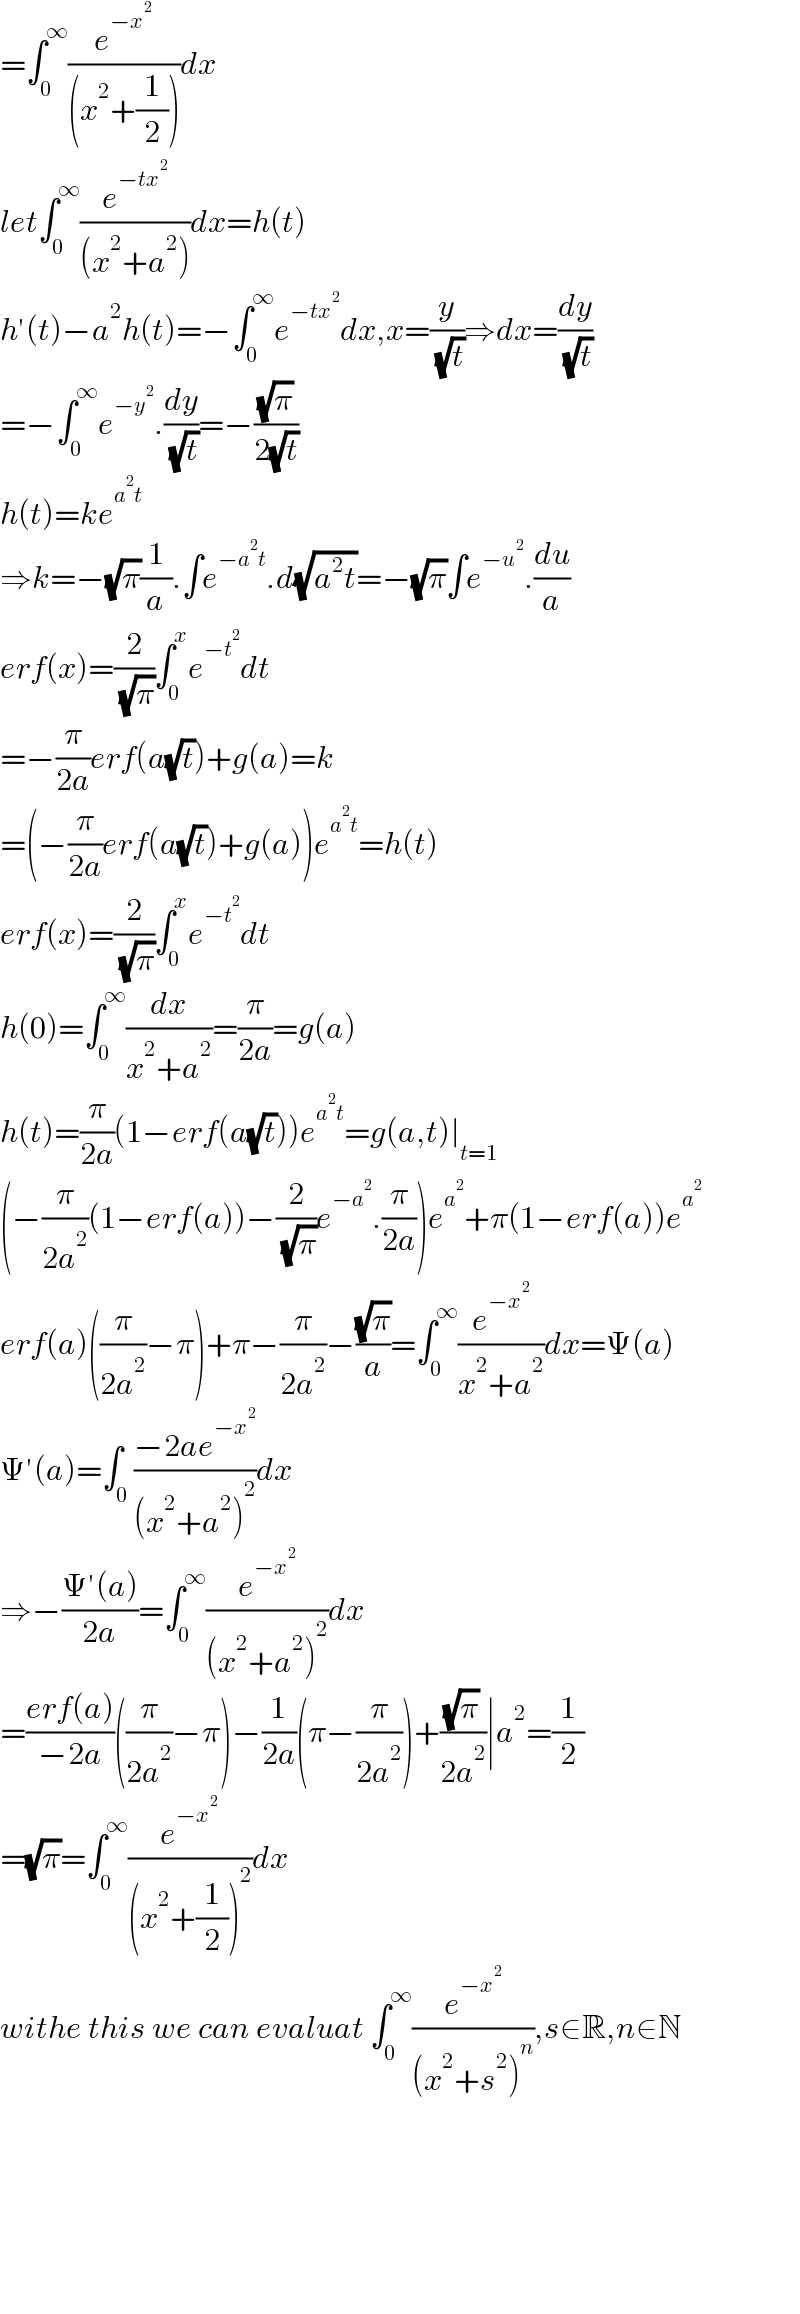 =∫_0 ^∞ (e^(−x^2 ) /((x^2 +(1/2))))dx  let∫_0 ^∞ (e^(−tx^2 ) /((x^2 +a^2 )))dx=h(t)  h′(t)−a^2 h(t)=−∫_0 ^∞ e^(−tx^2 ) dx,x=(y/( (√t)))⇒dx=(dy/( (√t)))  =−∫_0 ^∞ e^(−y^2 ) .(dy/( (√t)))=−((√π)/(2(√t)))  h(t)=ke^(a^2 t)   ⇒k=−(√π)(1/a).∫e^(−a^2 t) .d(√(a^2 t))=−(√π)∫e^(−u^2 ) .(du/a)  erf(x)=(2/( (√π)))∫_0 ^x e^(−t^2 ) dt  =−(π/(2a))erf(a(√t))+g(a)=k  =(−(π/(2a))erf(a(√t))+g(a))e^(a^2 t) =h(t)  erf(x)=(2/( (√π)))∫_0 ^x e^(−t^2 ) dt  h(0)=∫_0 ^∞ (dx/(x^2 +a^2 ))=(π/(2a))=g(a)  h(t)=(π/(2a))(1−erf(a(√t)))e^(a^2 t) =g(a,t)∣_(t=1)   (−(π/(2a^2 ))(1−erf(a))−(2/( (√π)))e^(−a^2 ) .(π/(2a)))e^a^2  +π(1−erf(a))e^a^2    erf(a)((π/(2a^2 ))−π)+π−(π/(2a^2 ))−((√π)/a)=∫_0 ^∞ (e^(−x^2 ) /(x^2 +a^2 ))dx=Ψ(a)  Ψ′(a)=∫_0 ((−2ae^(−x^2 ) )/((x^2 +a^2 )^2 ))dx  ⇒−((Ψ′(a))/(2a))=∫_0 ^∞ (e^(−x^2 ) /((x^2 +a^2 )^2 ))dx  =((erf(a))/(−2a))((π/(2a^2 ))−π)−(1/(2a))(π−(π/(2a^2 )))+((√π)/(2a^2 ))∣a^2 =(1/2)  =(√π)=∫_0 ^∞ (e^(−x^2 ) /((x^2 +(1/2))^2 ))dx  withe this we can evaluat ∫_0 ^∞ (e^(−x^2 ) /((x^2 +s^2 )^n )),s∈R,n∈N            